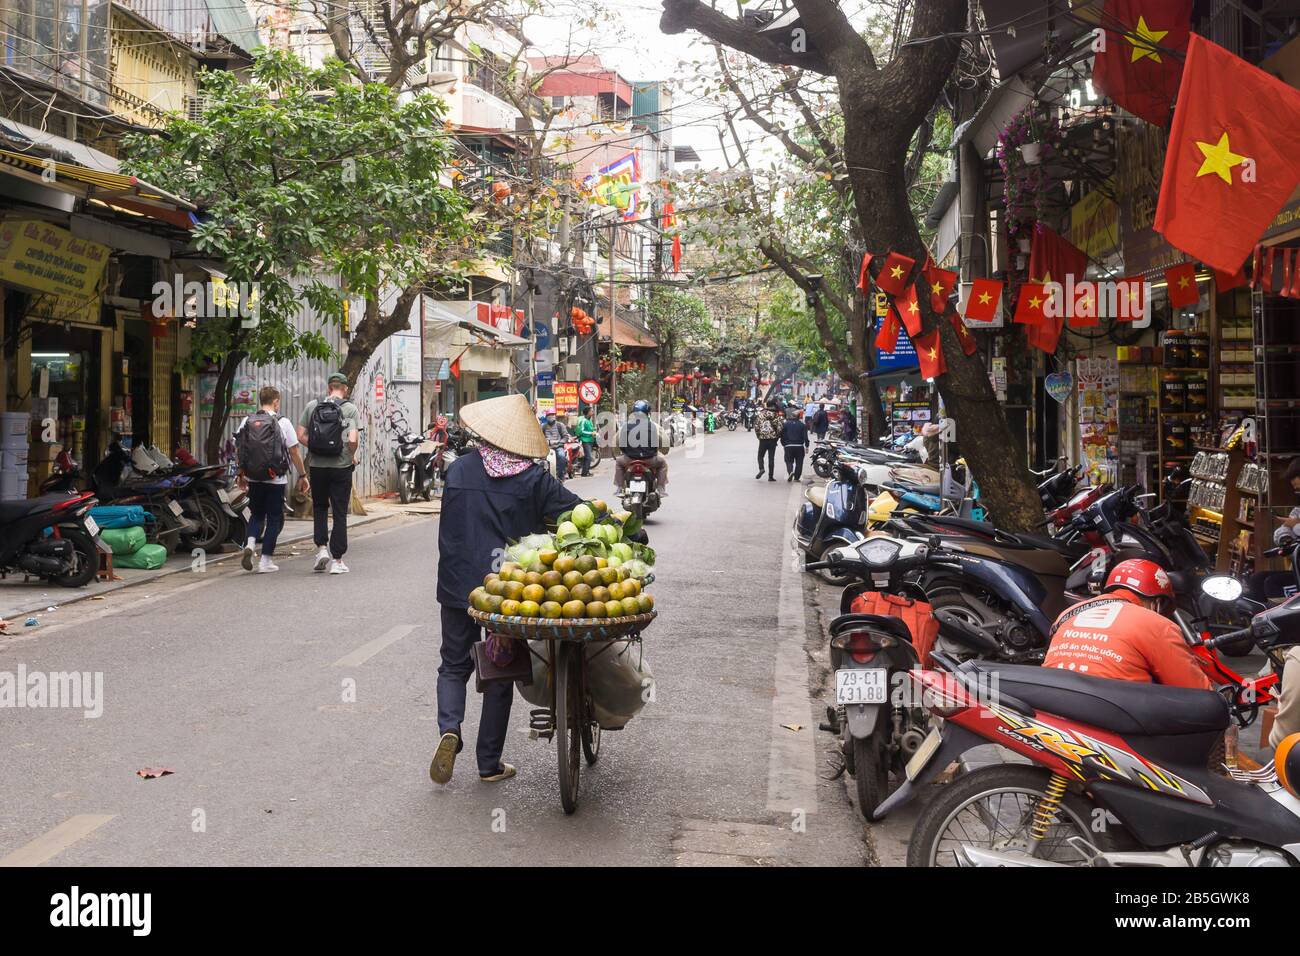 Vendeur de rue de Hanoi - une scène de rue dans le vieux quartier de Hanoi, vendeur de rue de fruits poussant la bicyclette. Vietnam, Asie du Sud-est. Banque D'Images